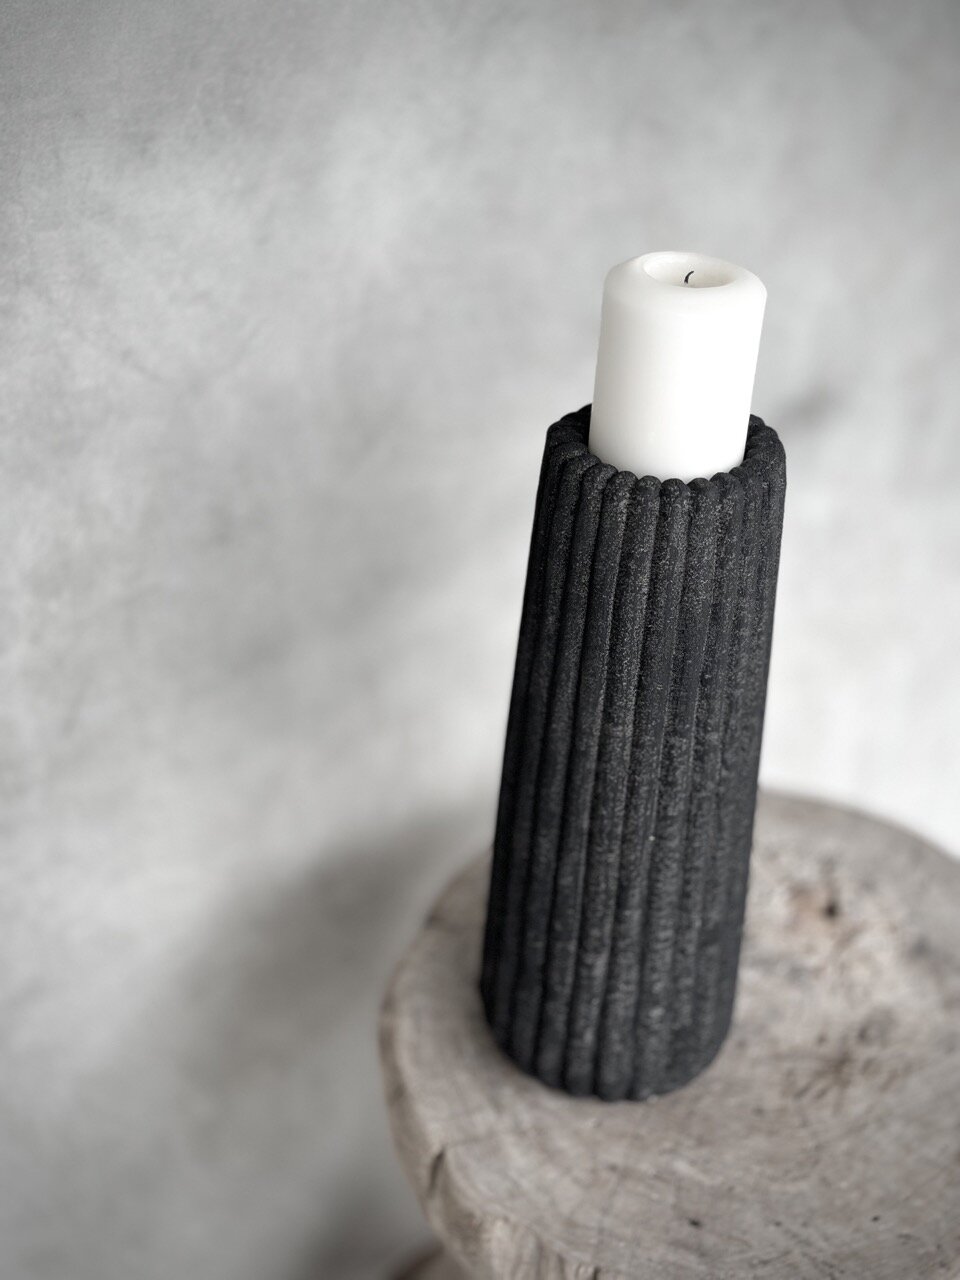 WOKO stone candle holder large, black antique